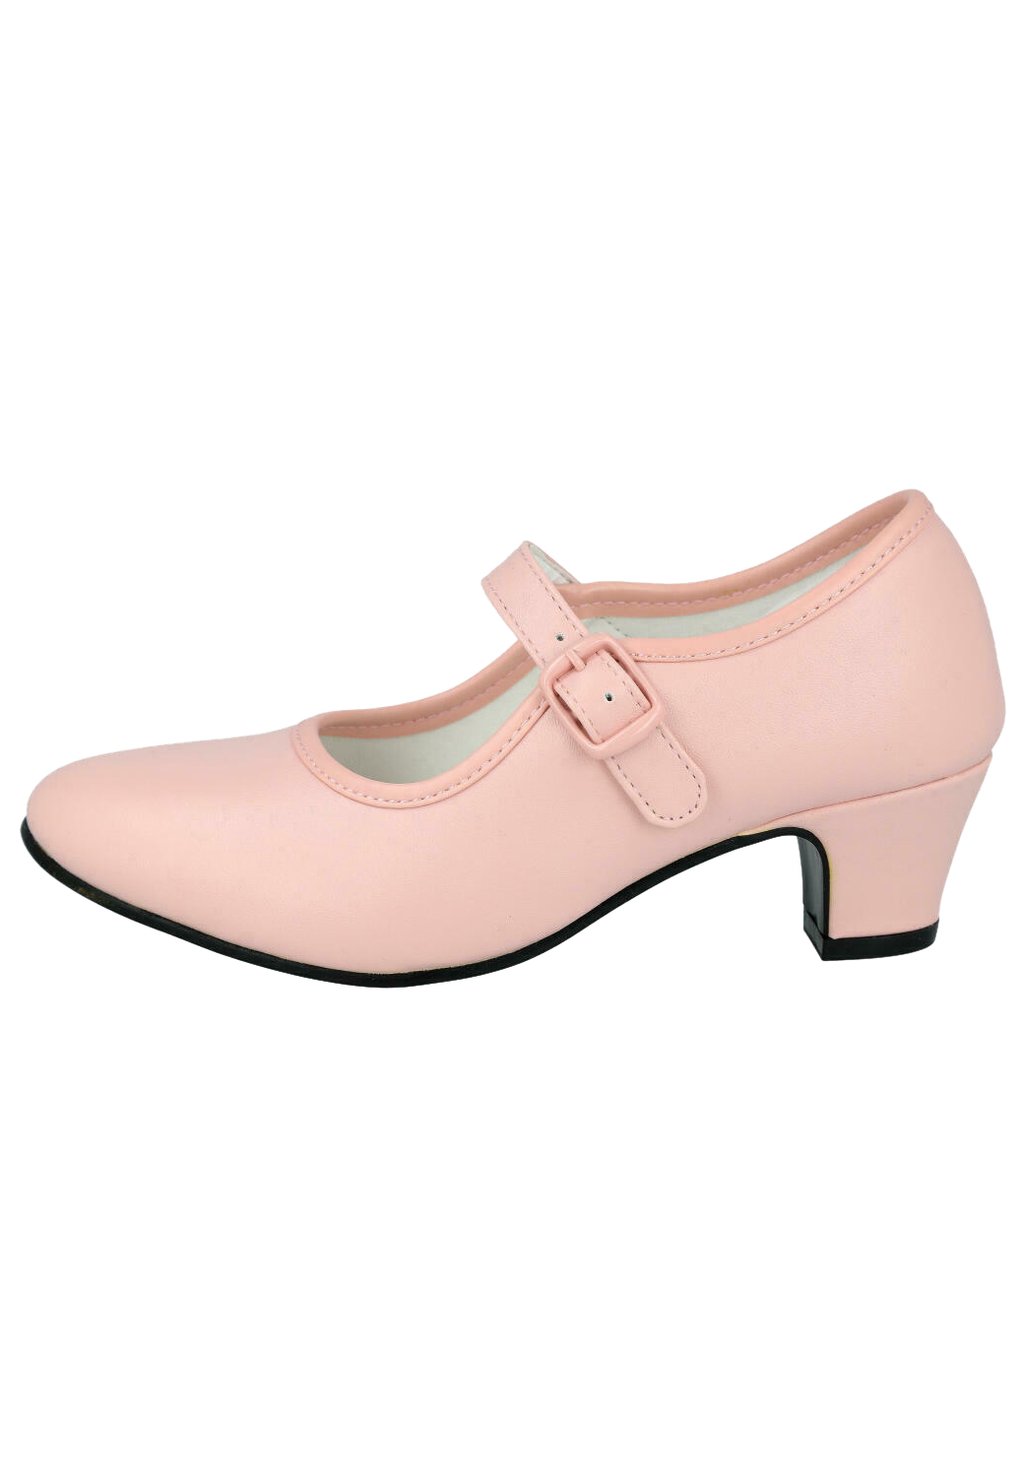 Детская обувь FLAMENCA L&R Shoes, розовый